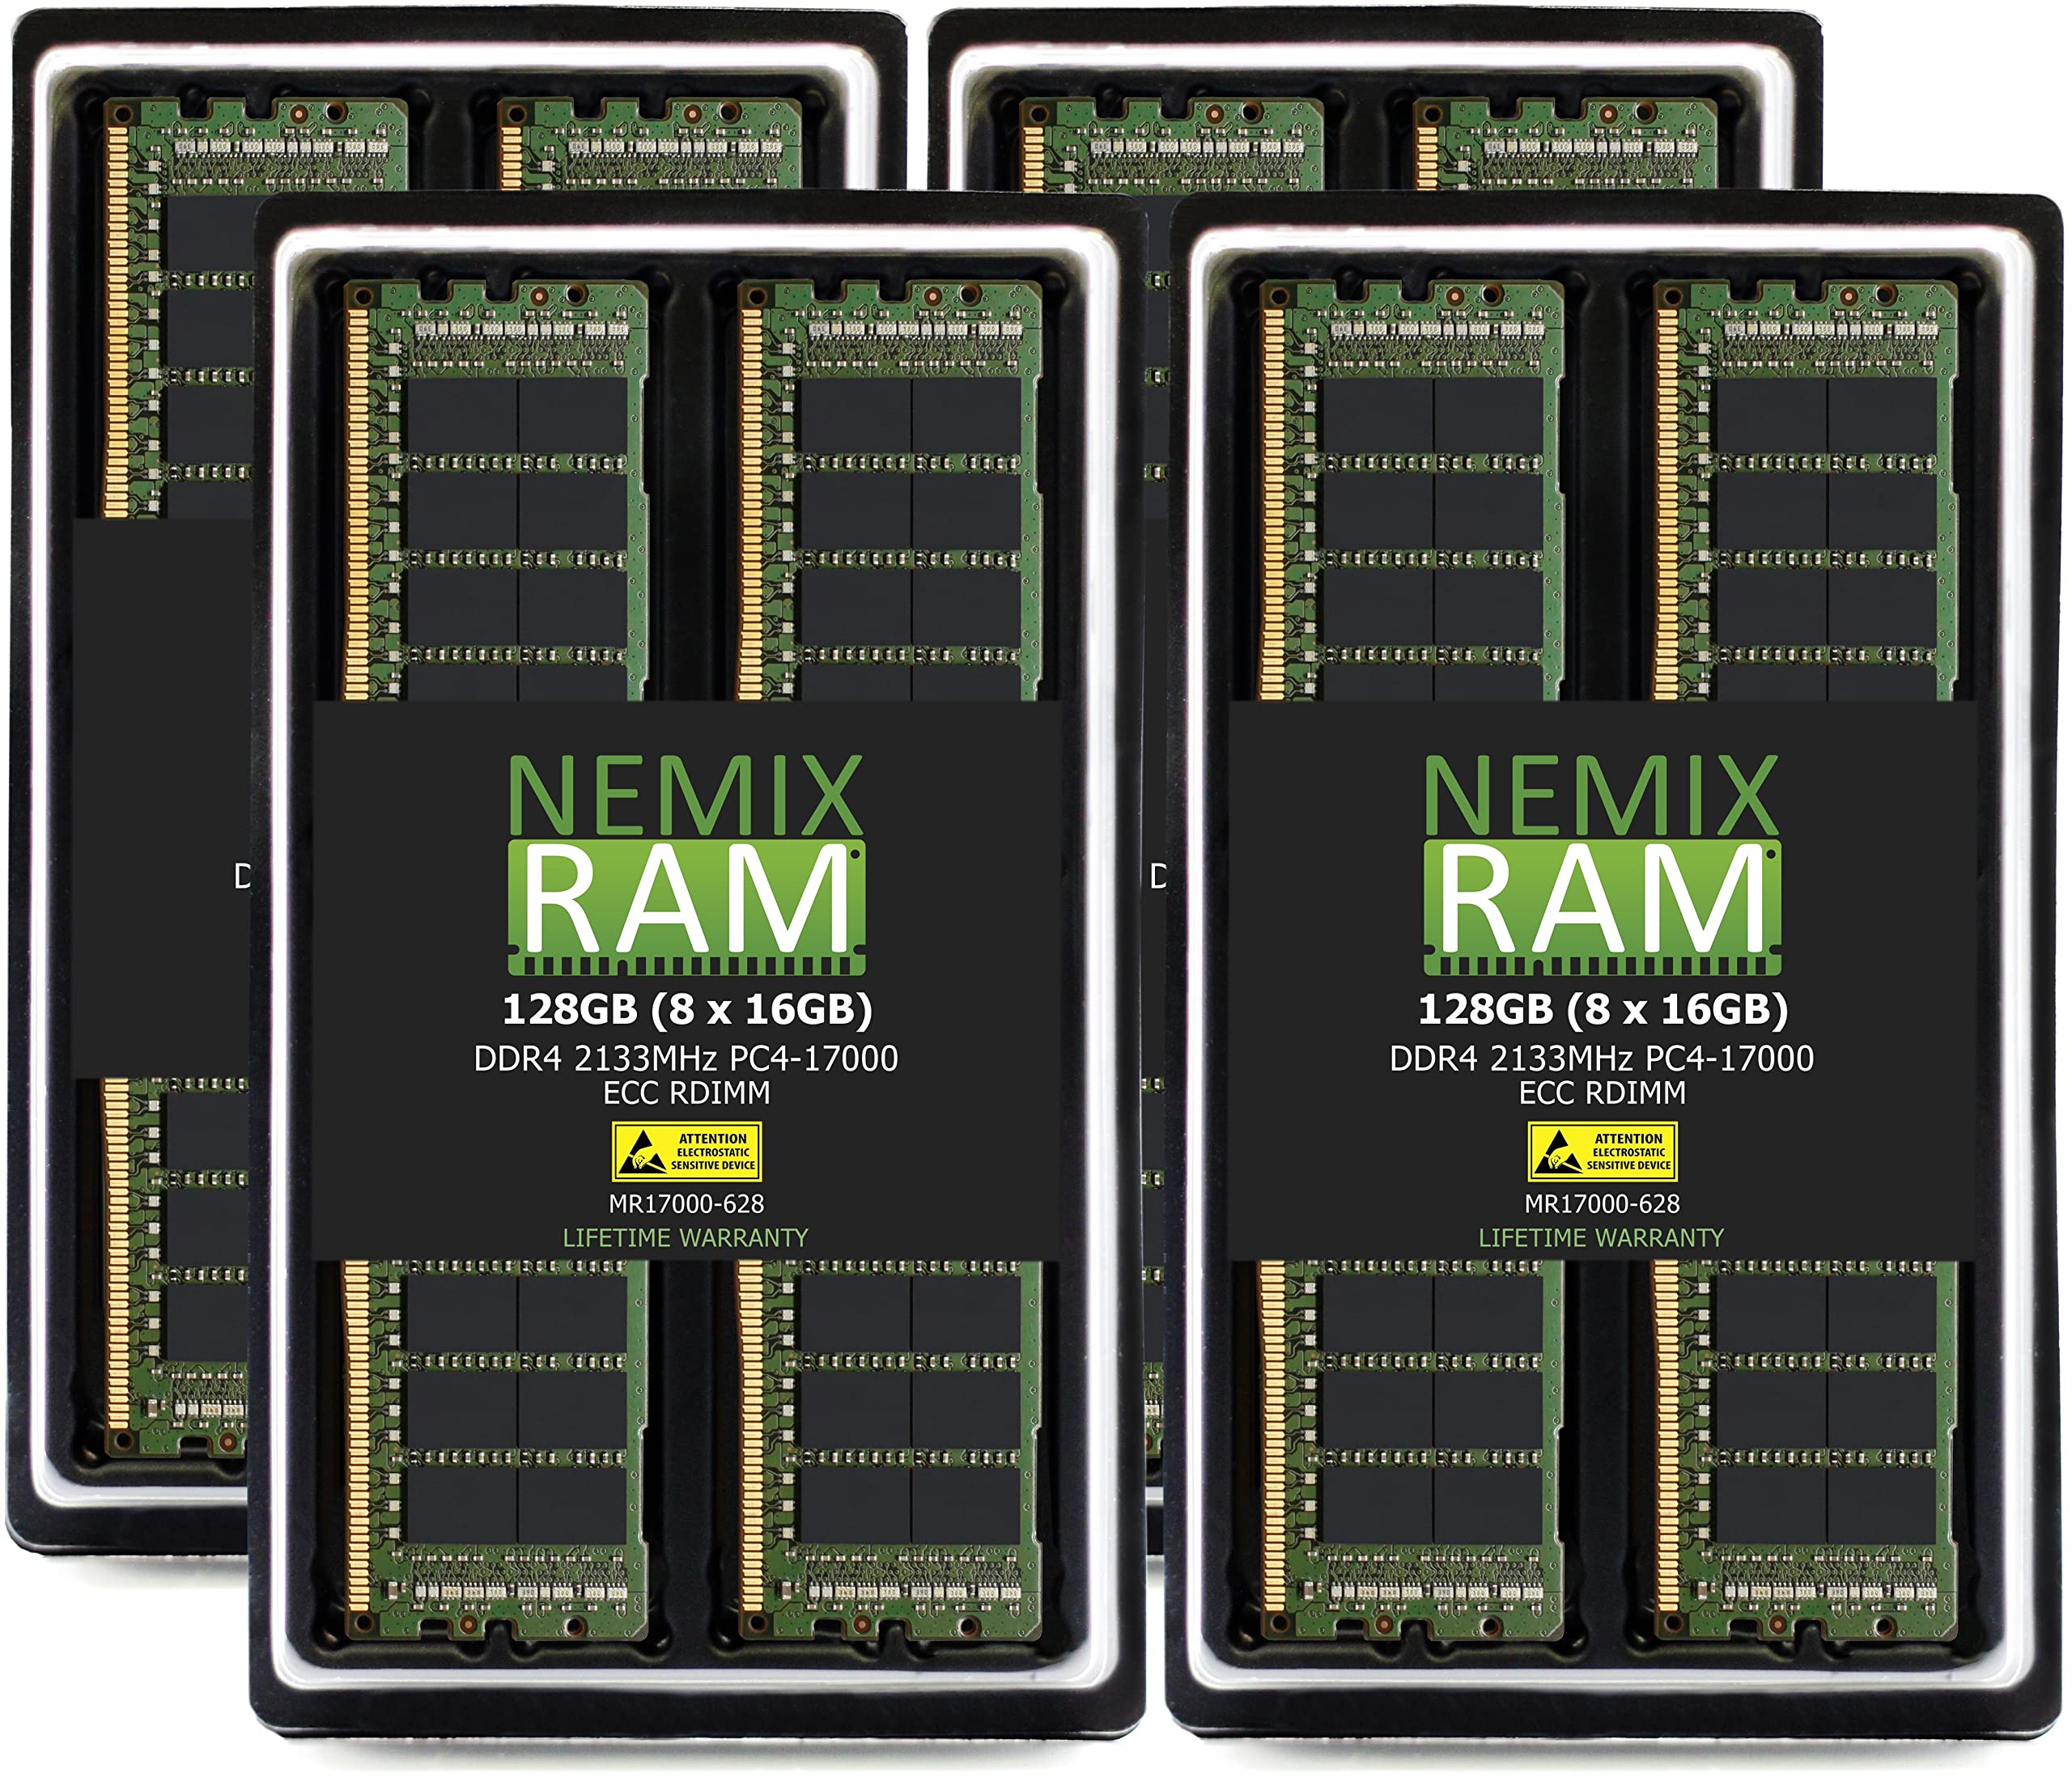 NEMIX RAM 128GB 8x16GB DDR4-2400 PC4-19200 ECC RDIMM レジスタードサーバーメモリアップグレード Dell Powe